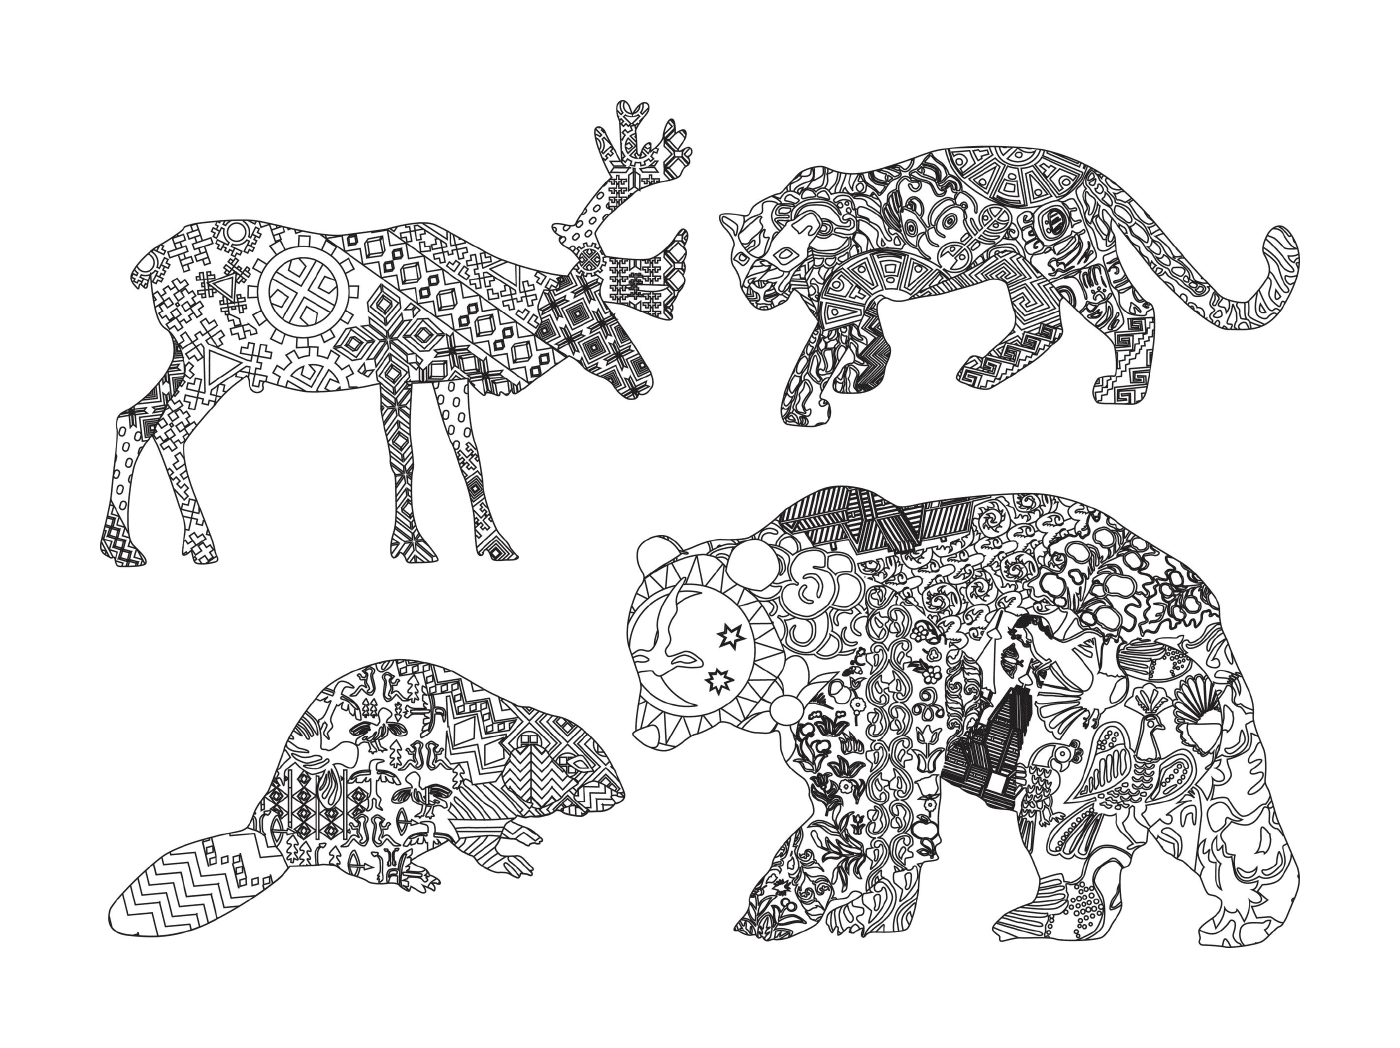  Gruppe der mit Motiven gezeichneten Tiere 